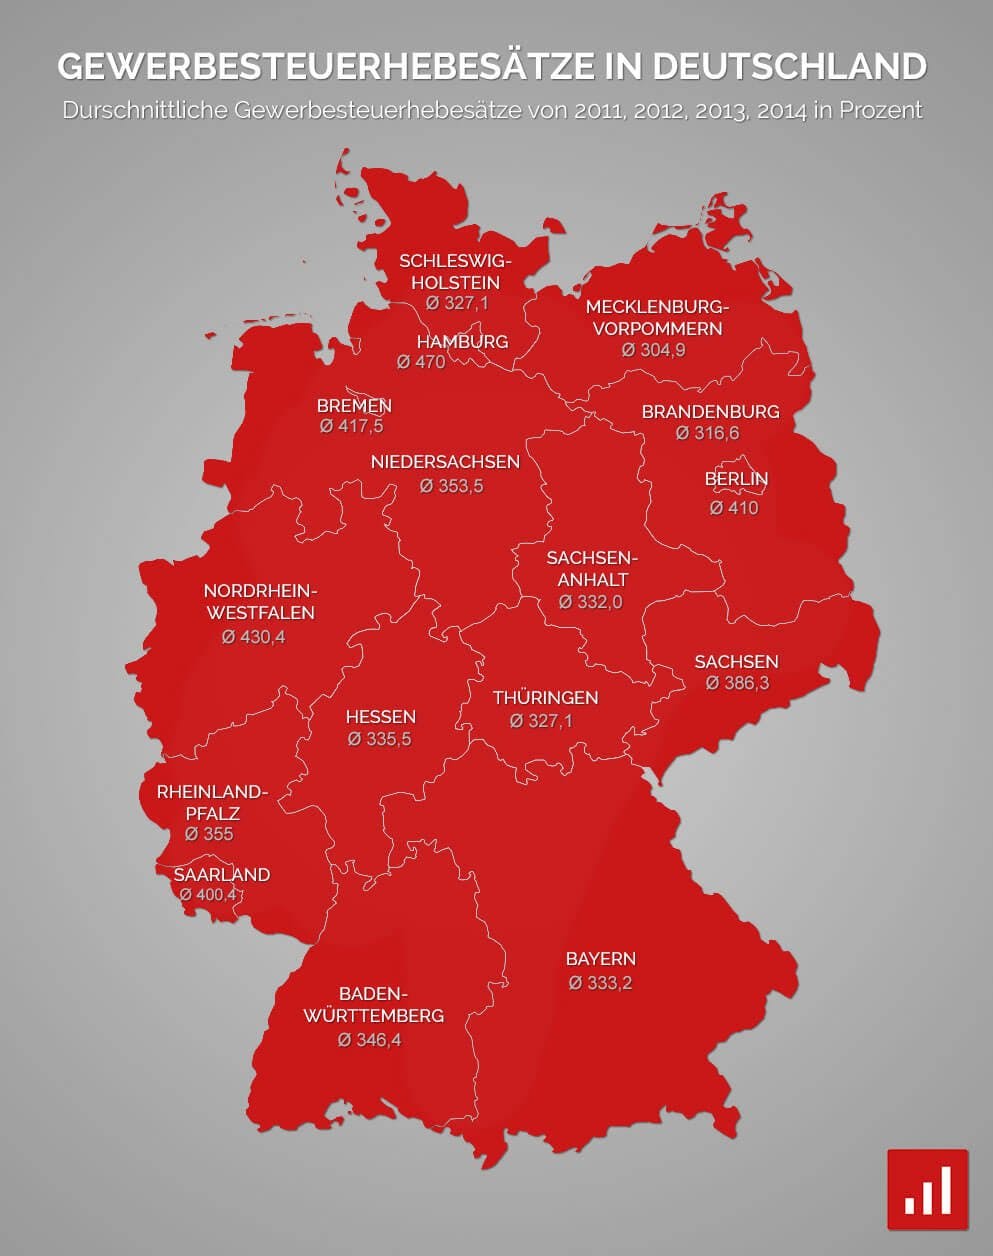 Gewerbesteuer in Deutschland nach Bundesland